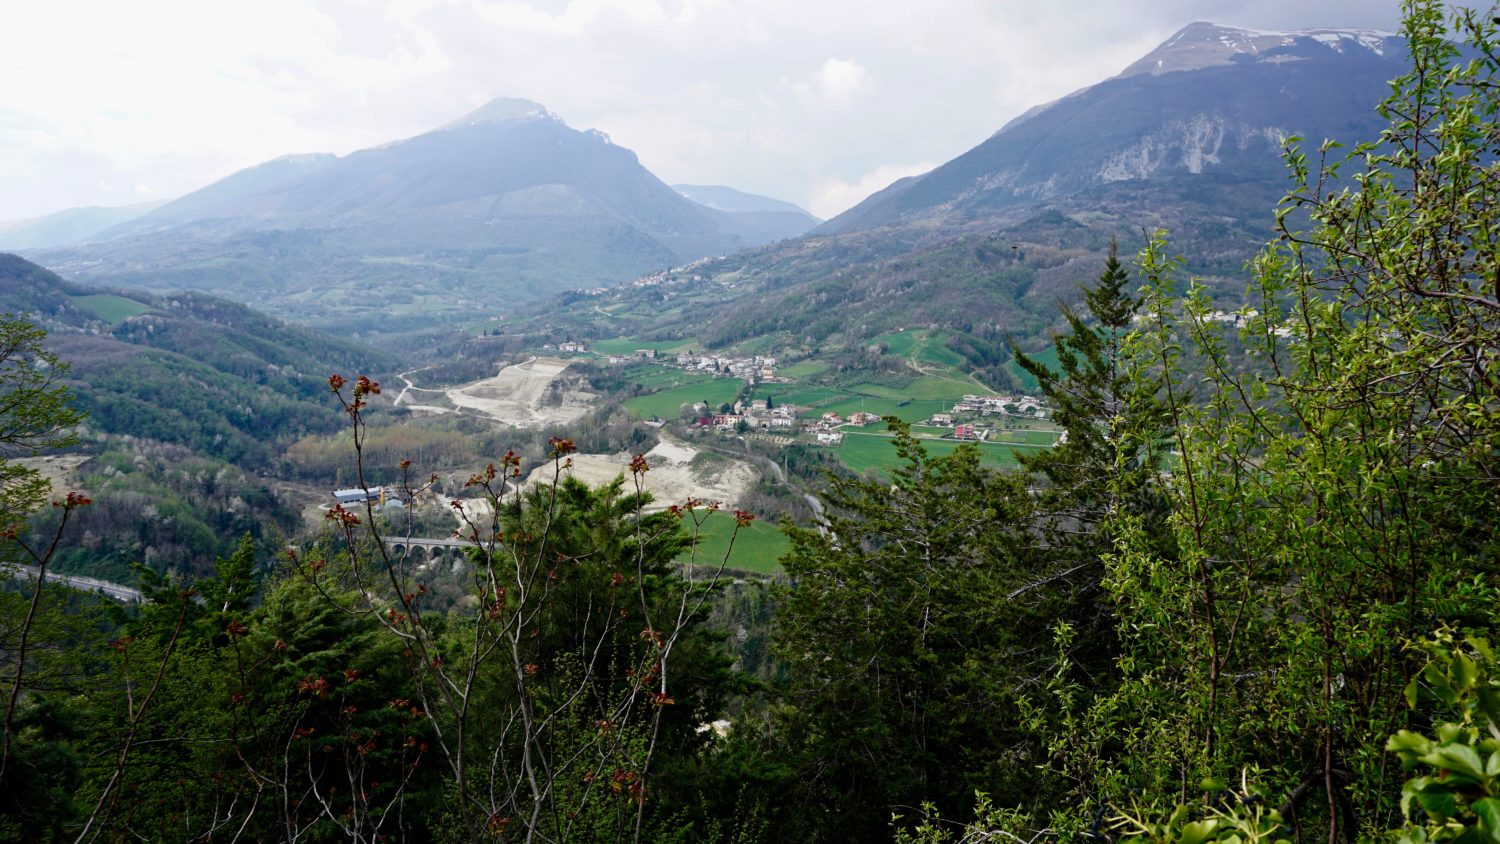 Hills in the Teramo Province of Abruzzo